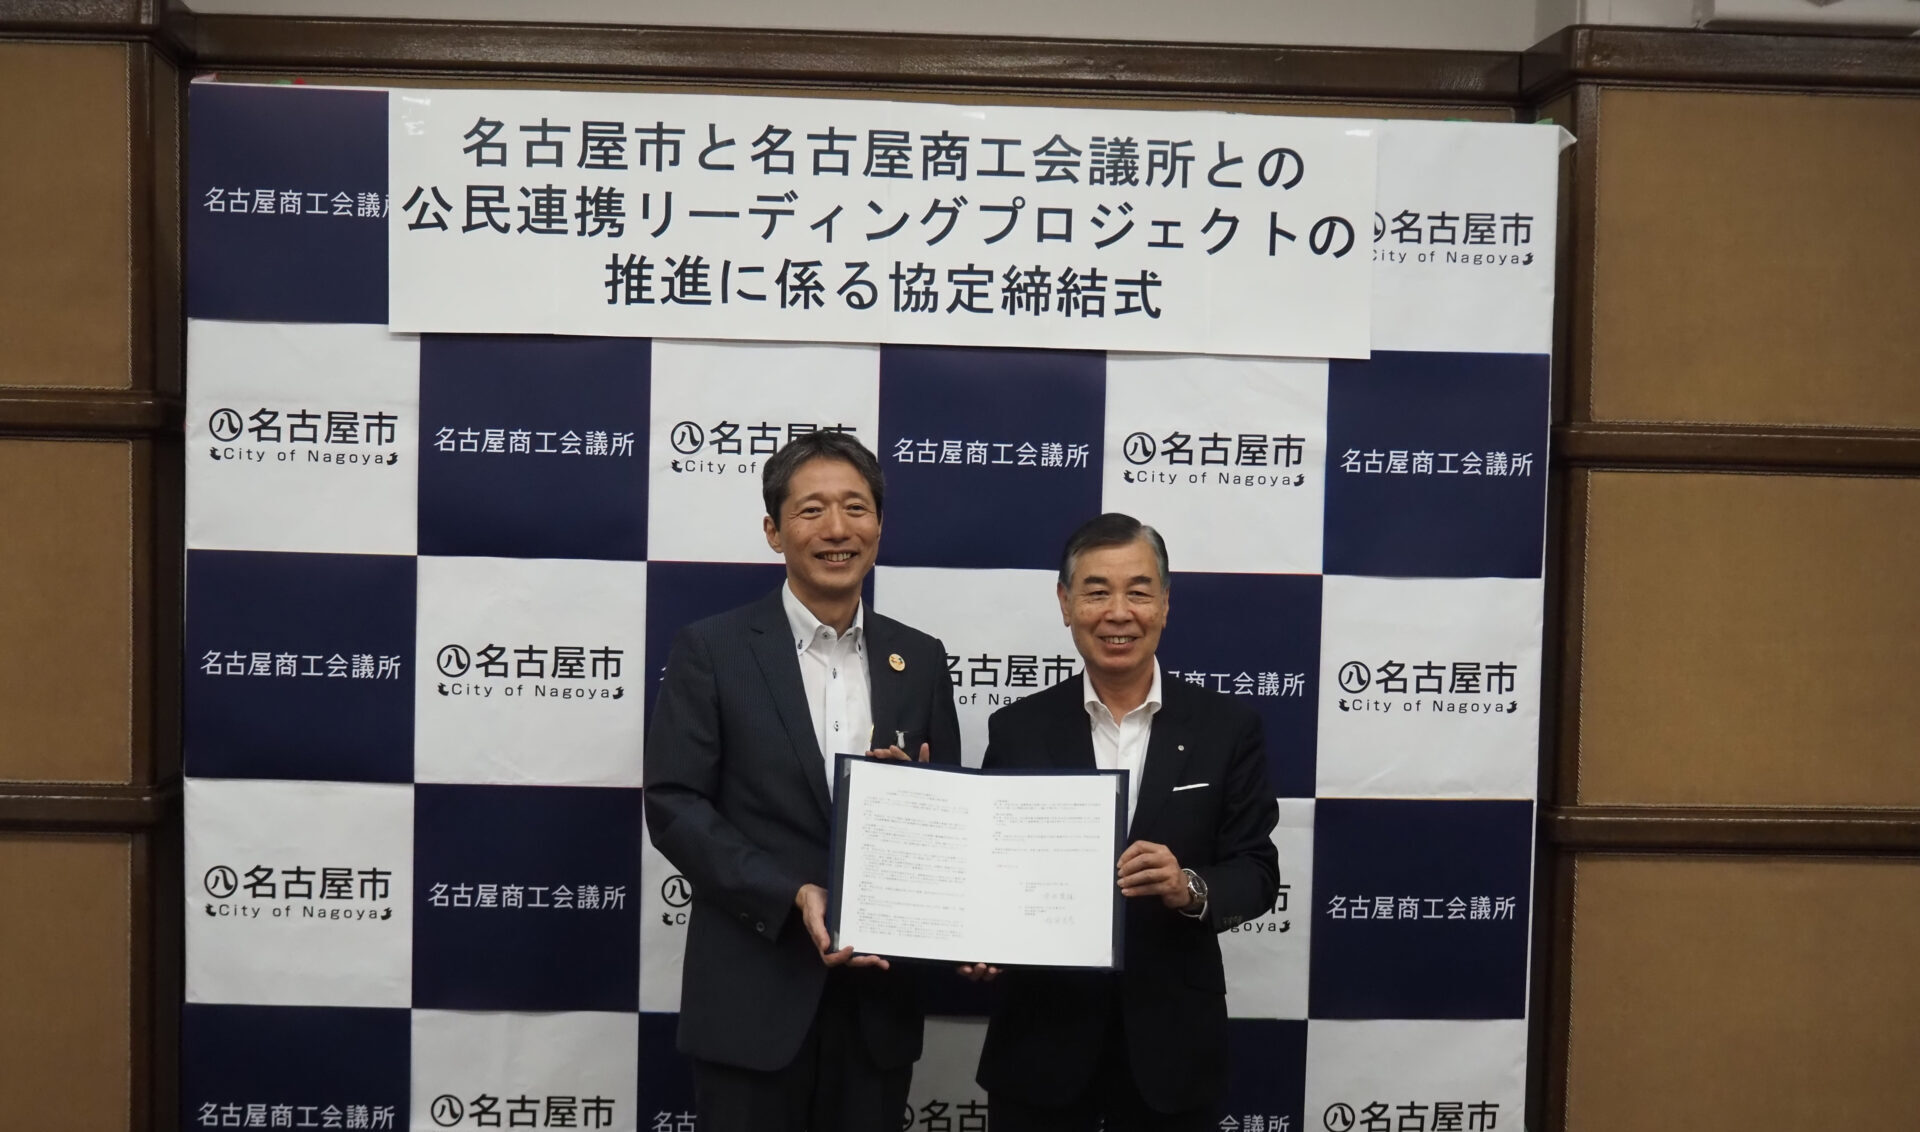 名古屋市と名古屋商工会議所との 公民連携リーディングプロジェクトの推進に係る協定の締結について